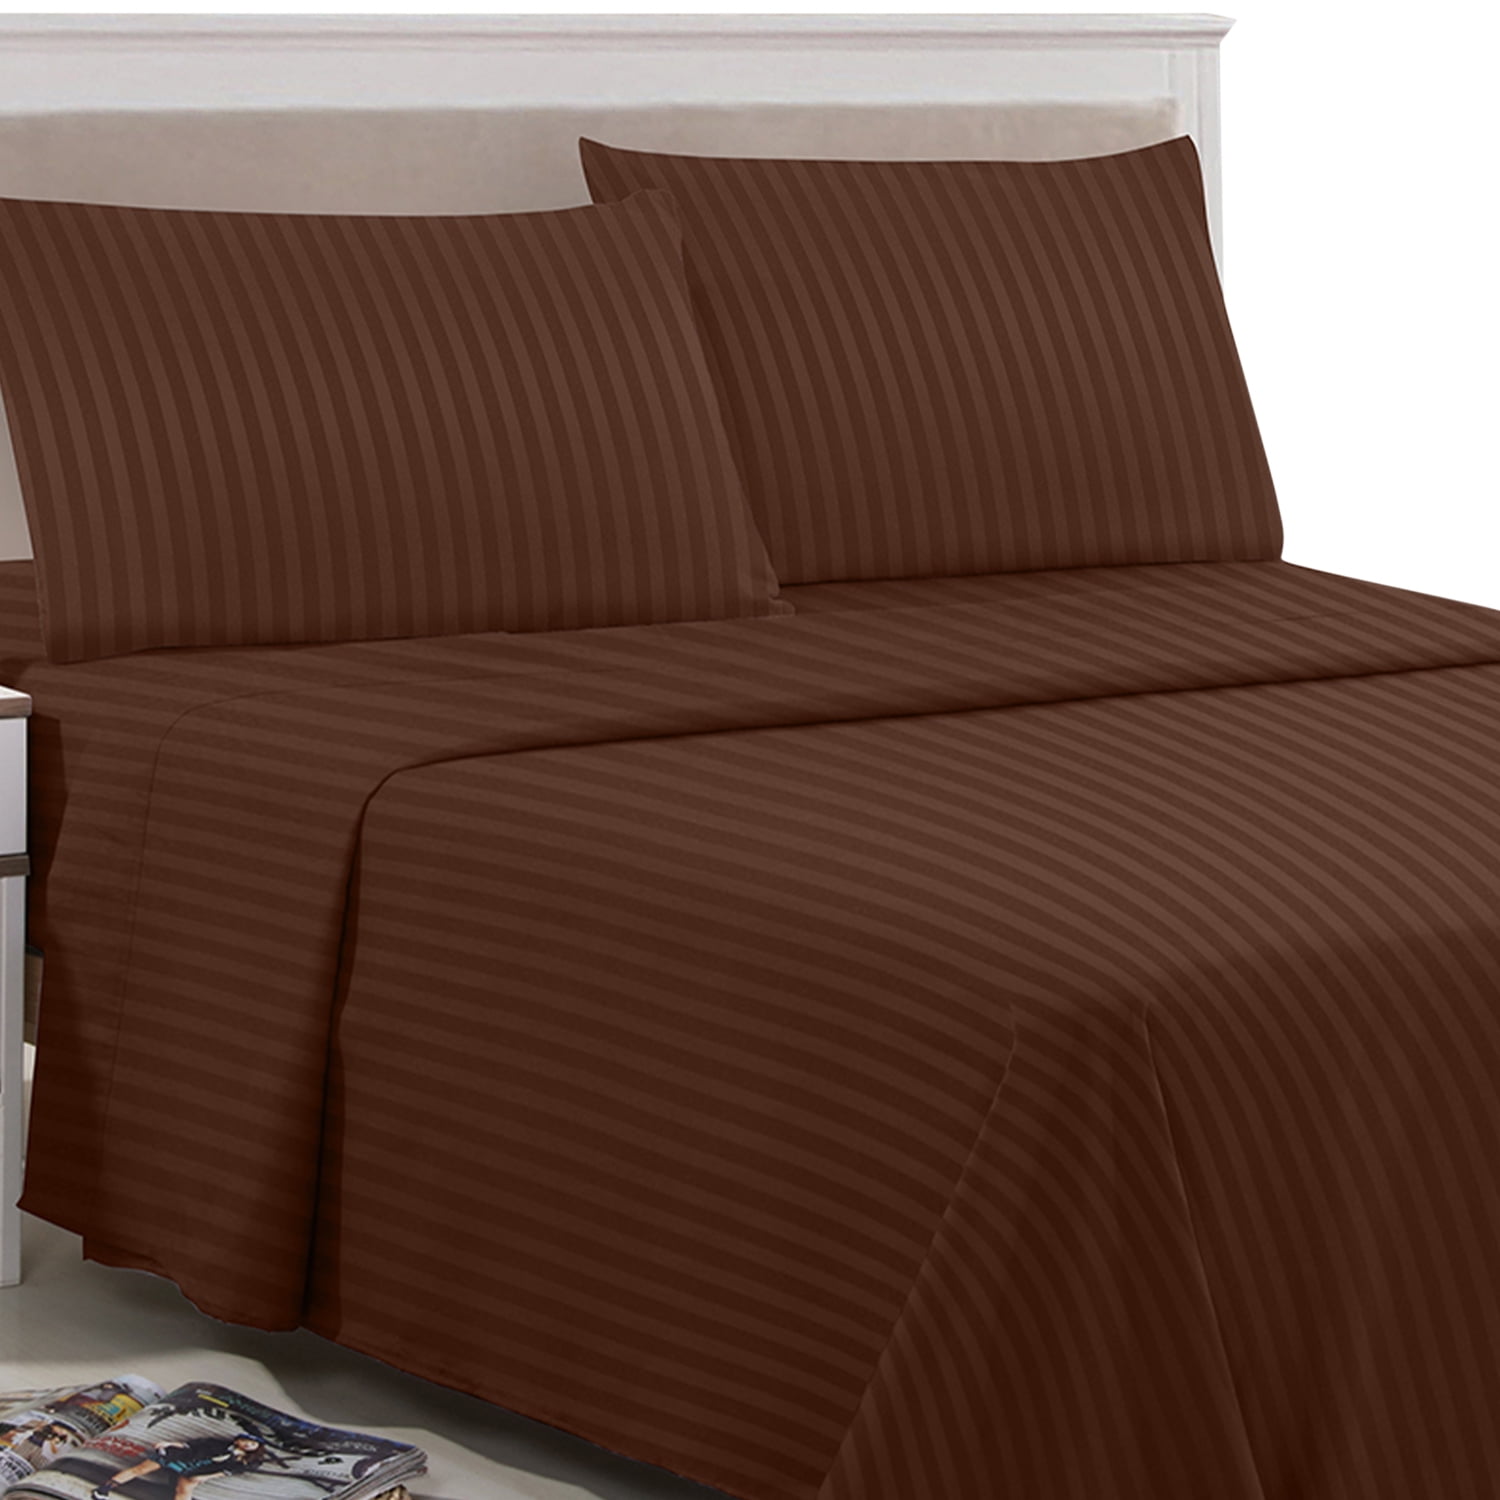 1 Flat Sheet 1 Deep Pocket Fitted Sheet 2 Pillow Cases 4-Piece Details about   Bed Sheet Set 